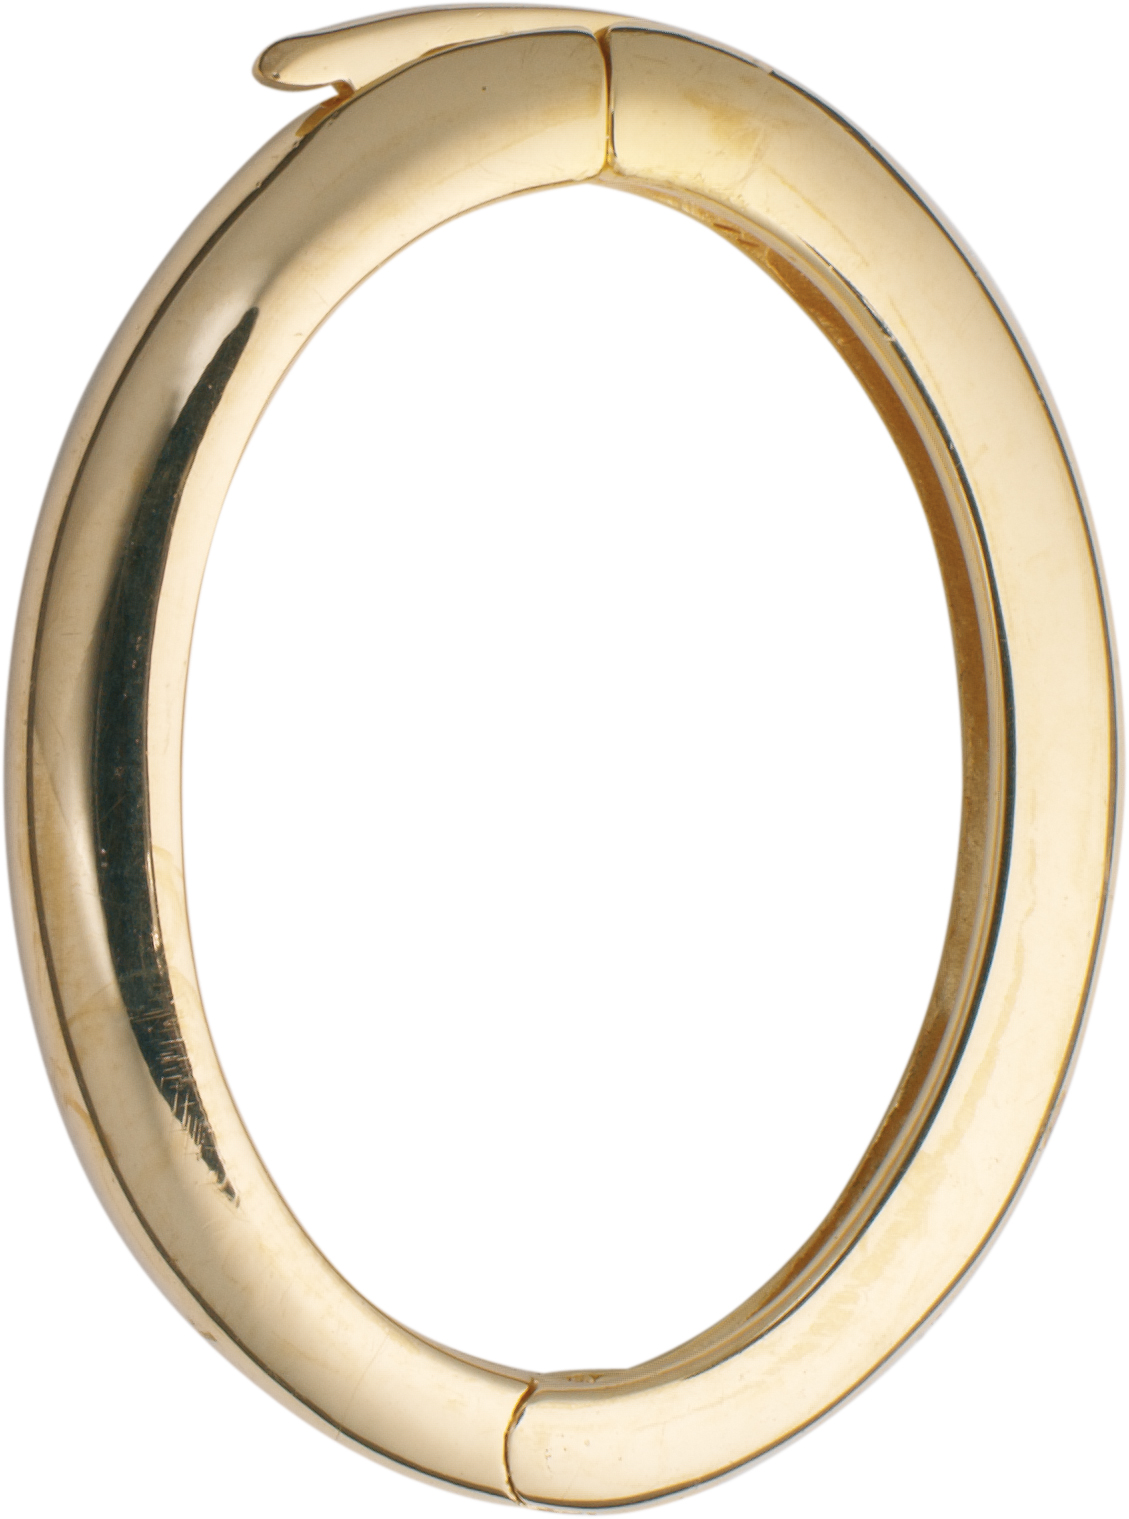 Chain clip gold 375/-Gg, oval L 21.00 x W 15.00mm